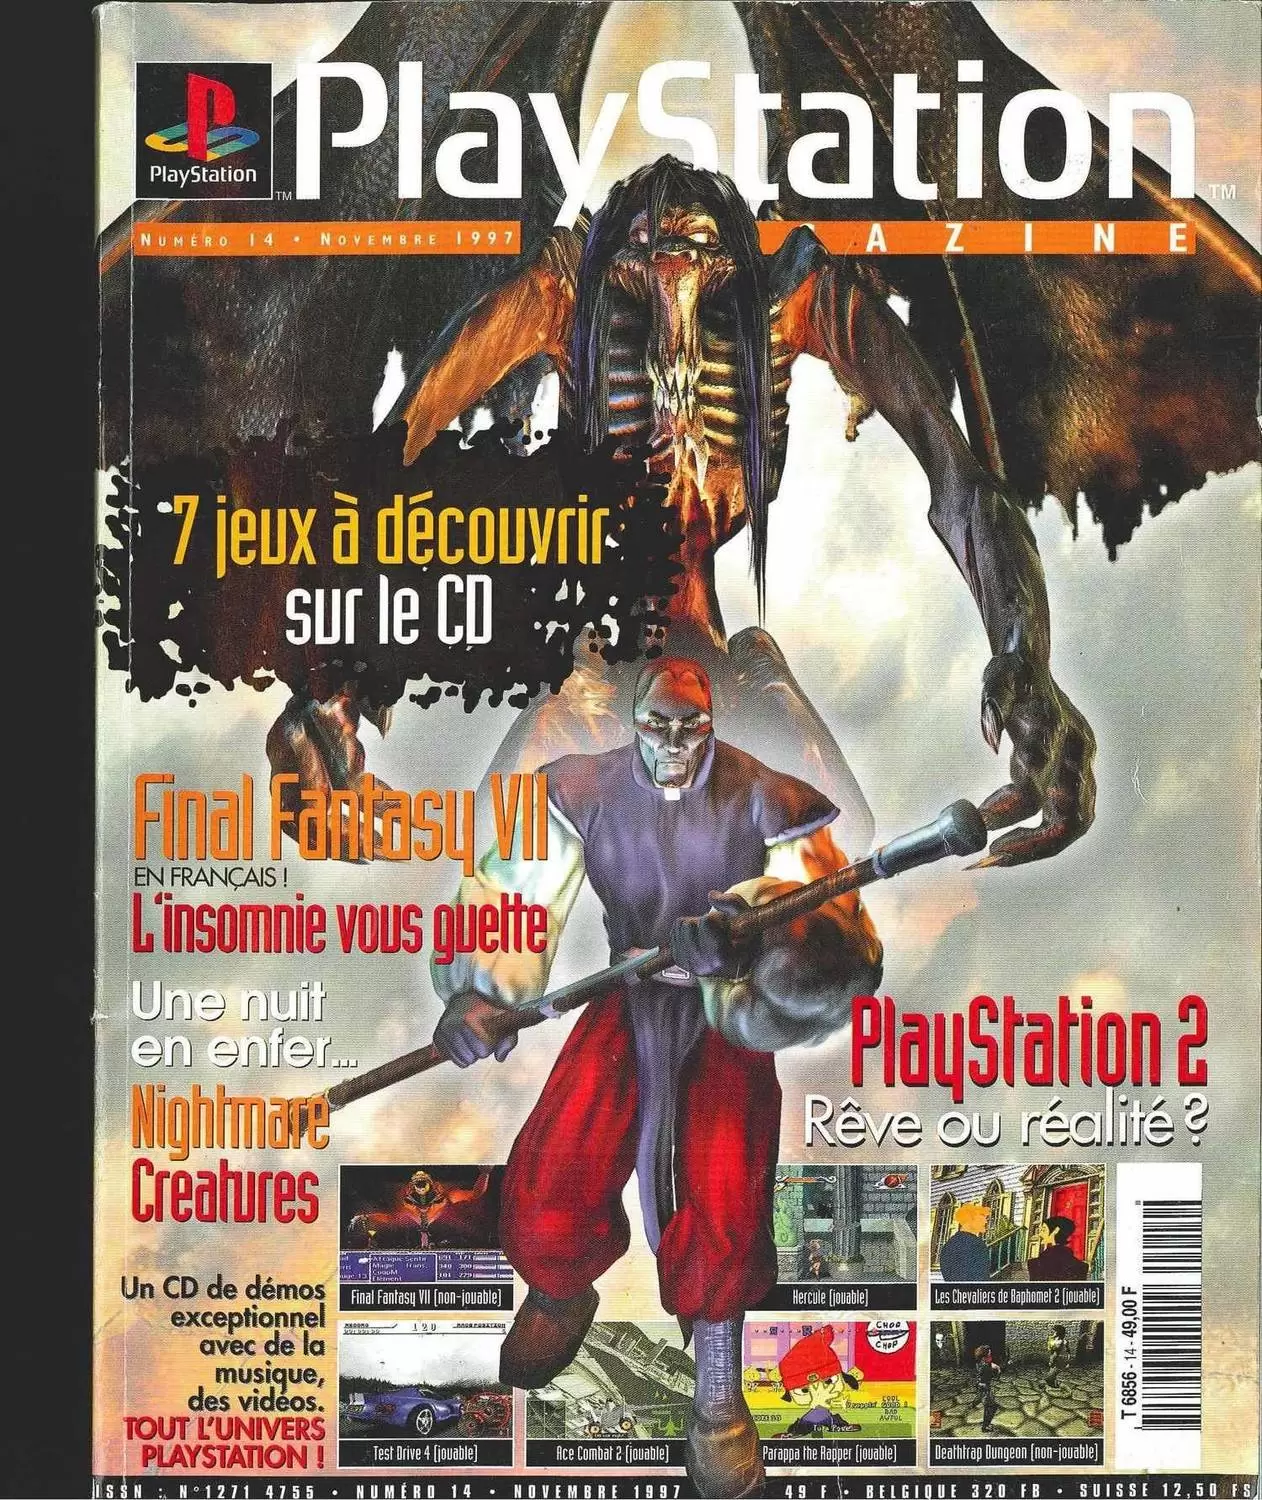 Playstation Magazine - Playstation Magazine #14